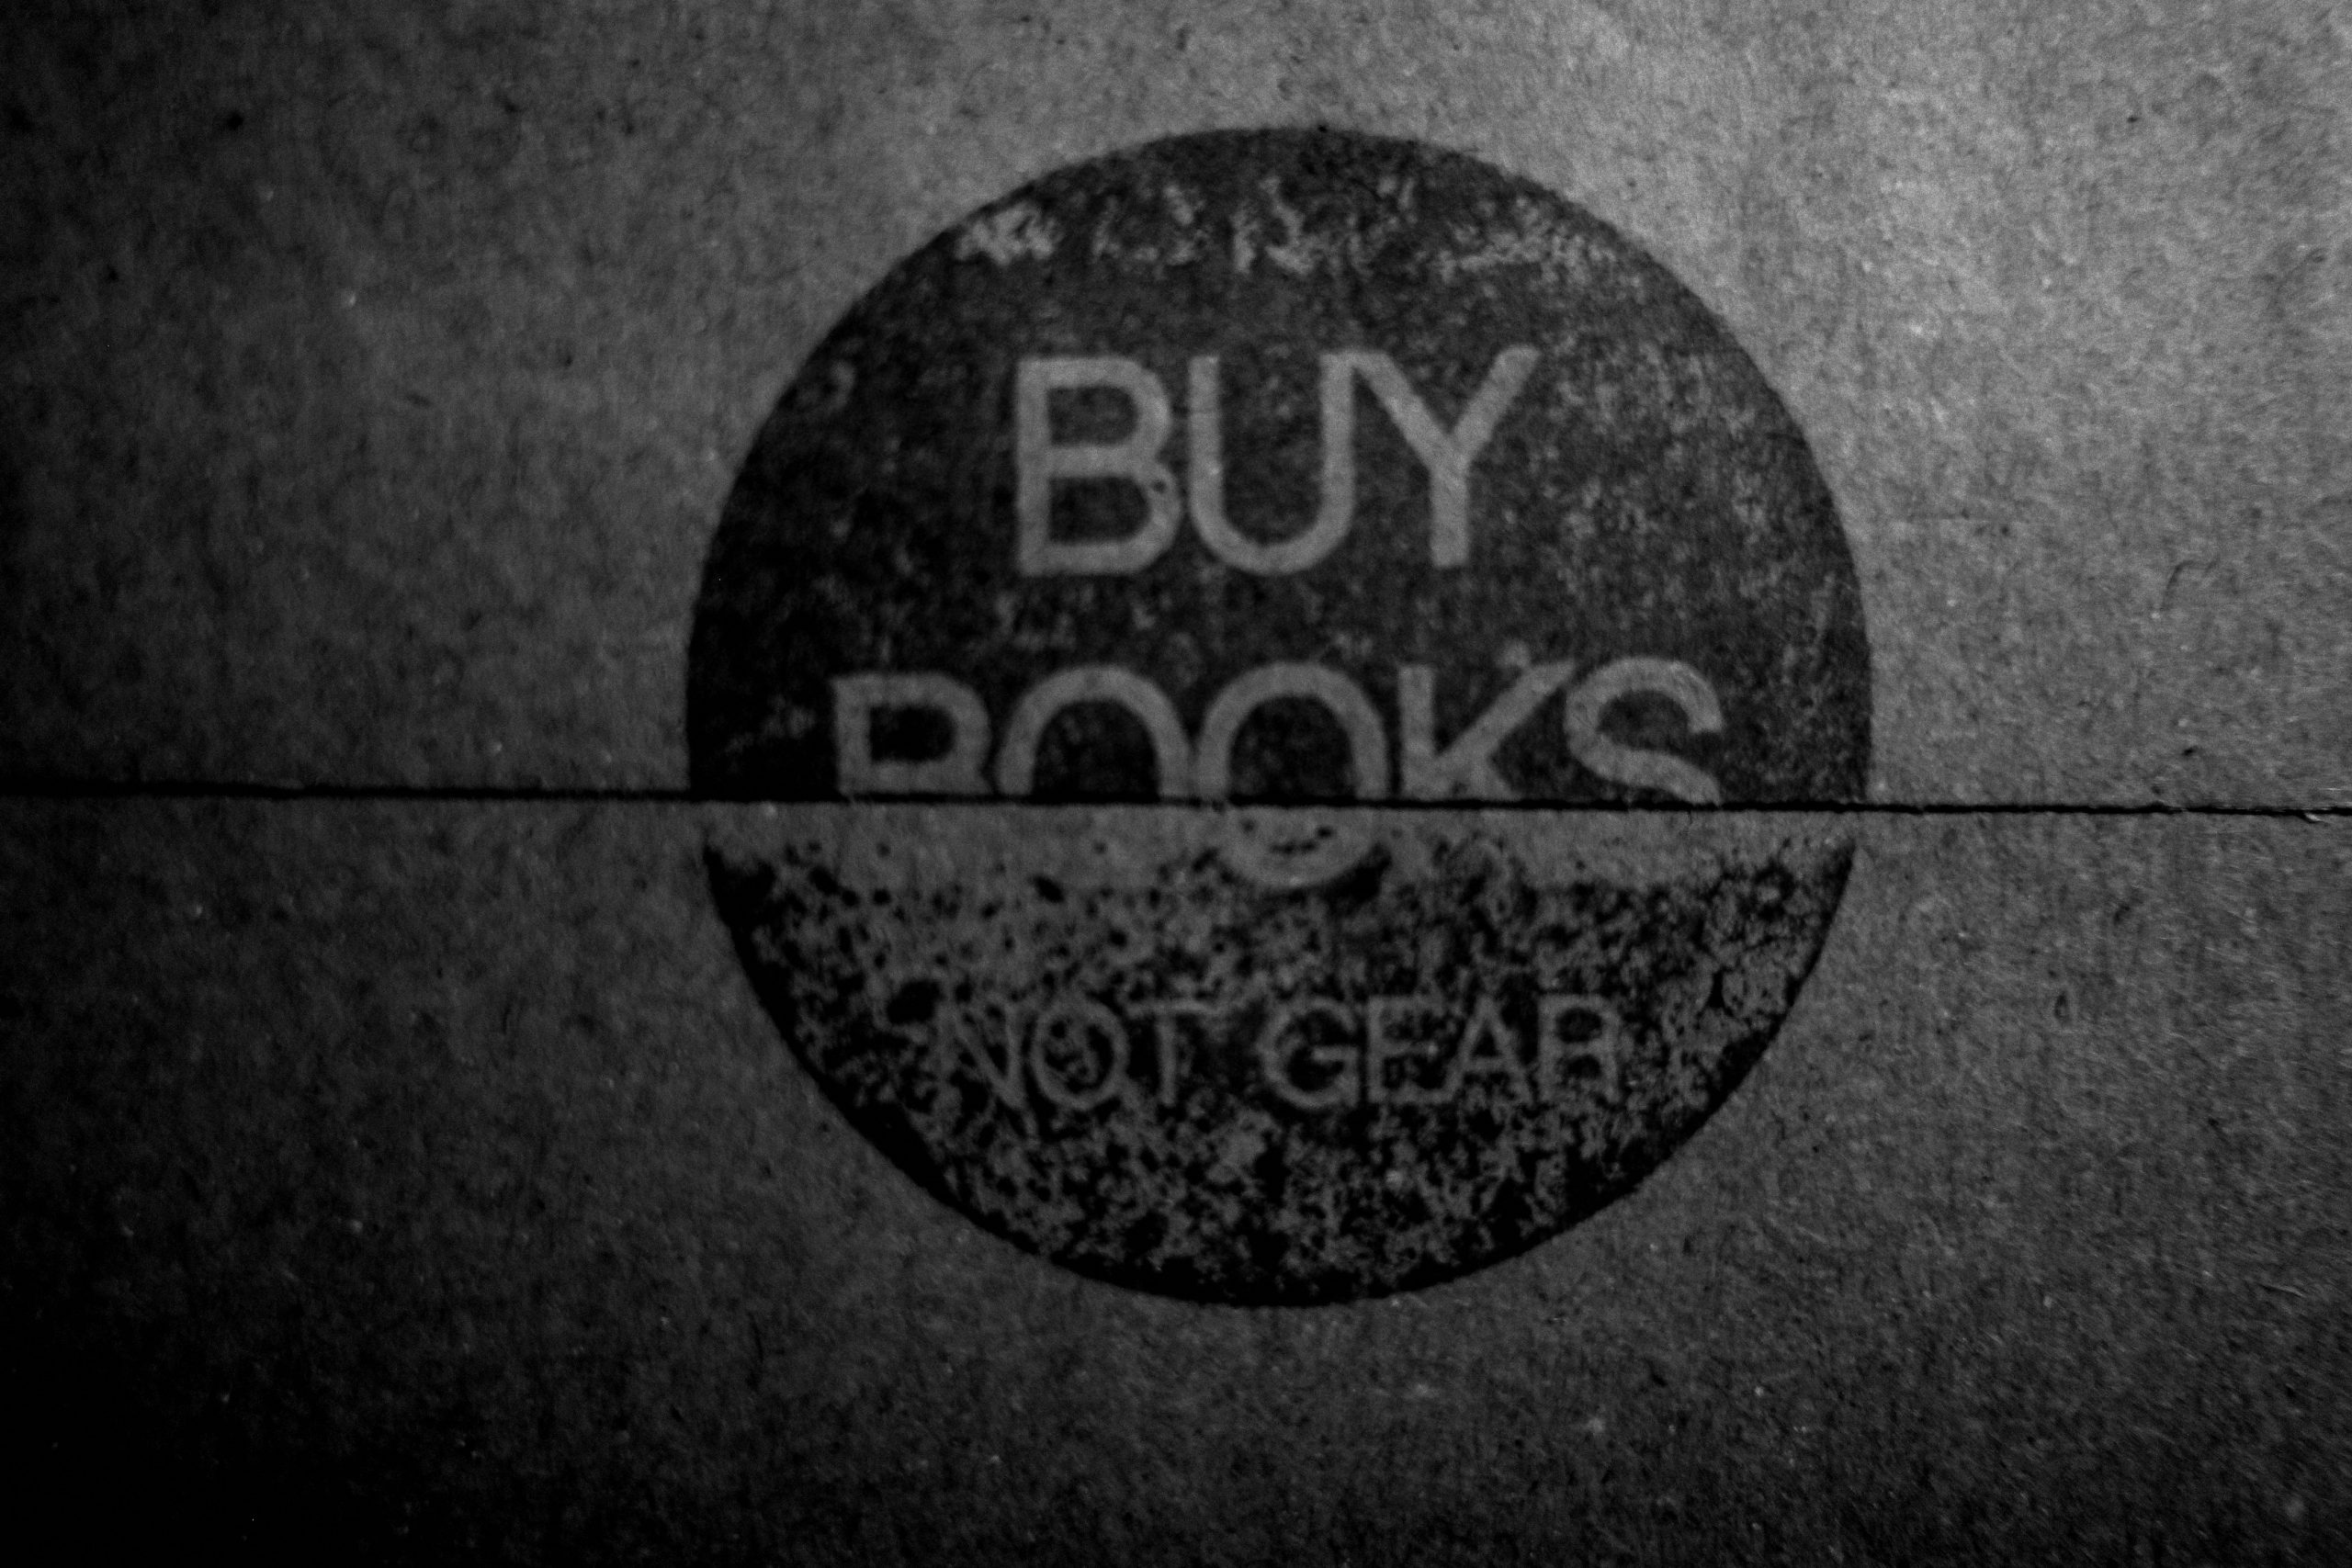 buy books not gear